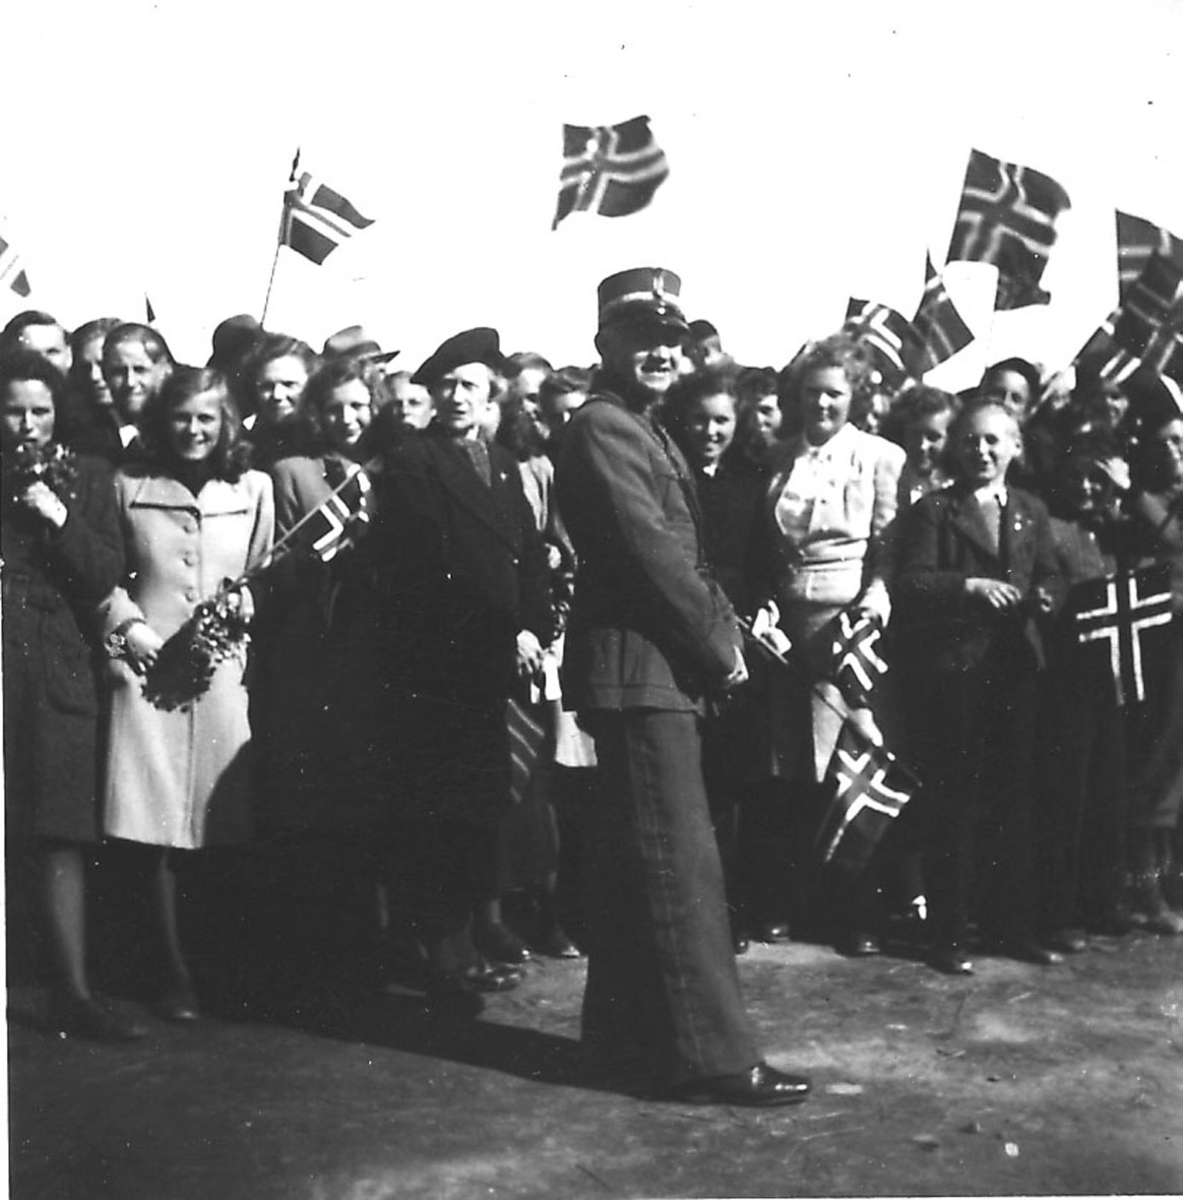 Frigjøringsdagene i Bodø etter krigen  1945. Flere personer, noen med flagg. En person i uniform foran.